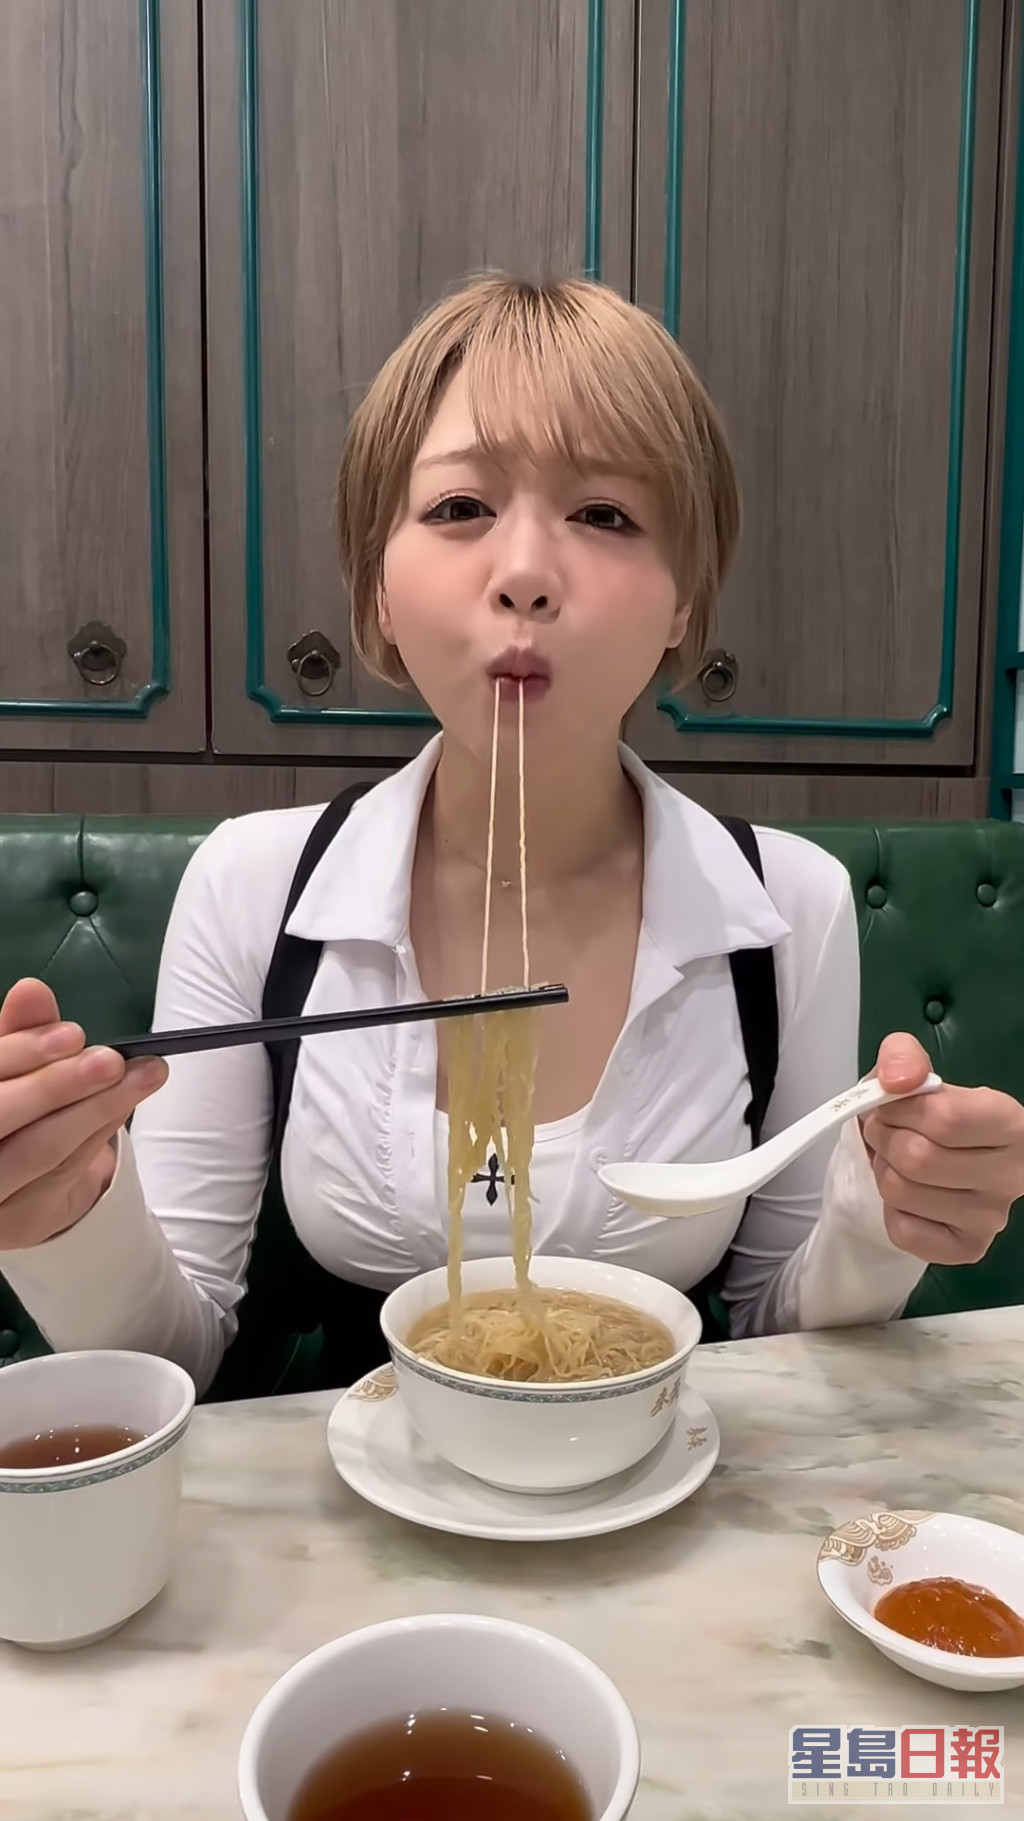 长长啲面条对食开拉面嘅日本人竟然都系一个大挑战。